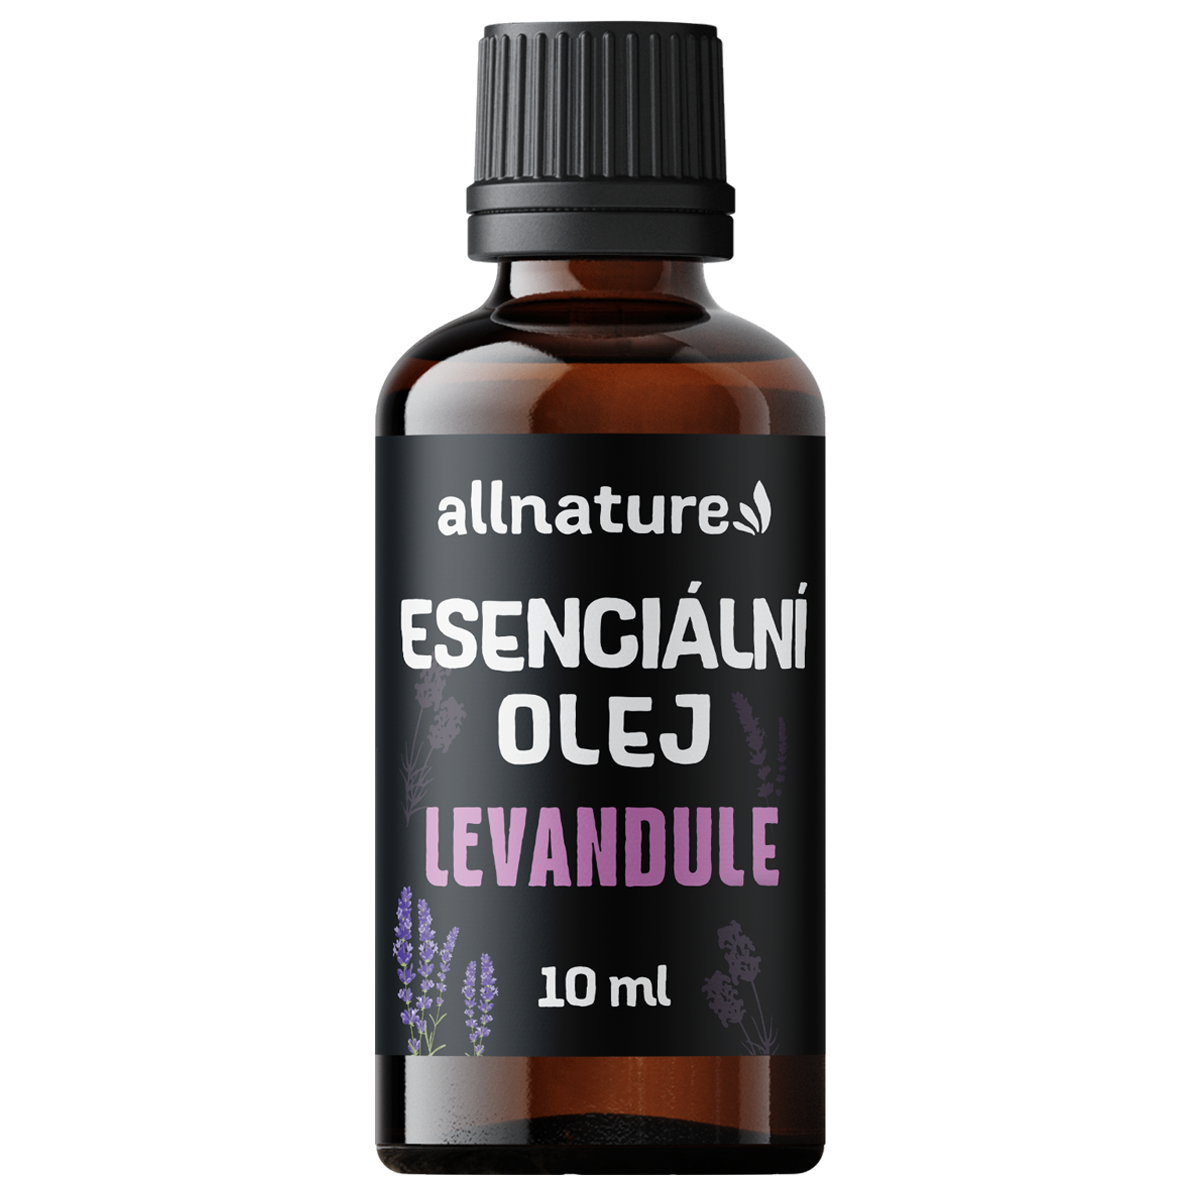 Allnature Esenciální olej Levandule (10 ml) - zklidňuje a podporuje zdravý spánek Allnature